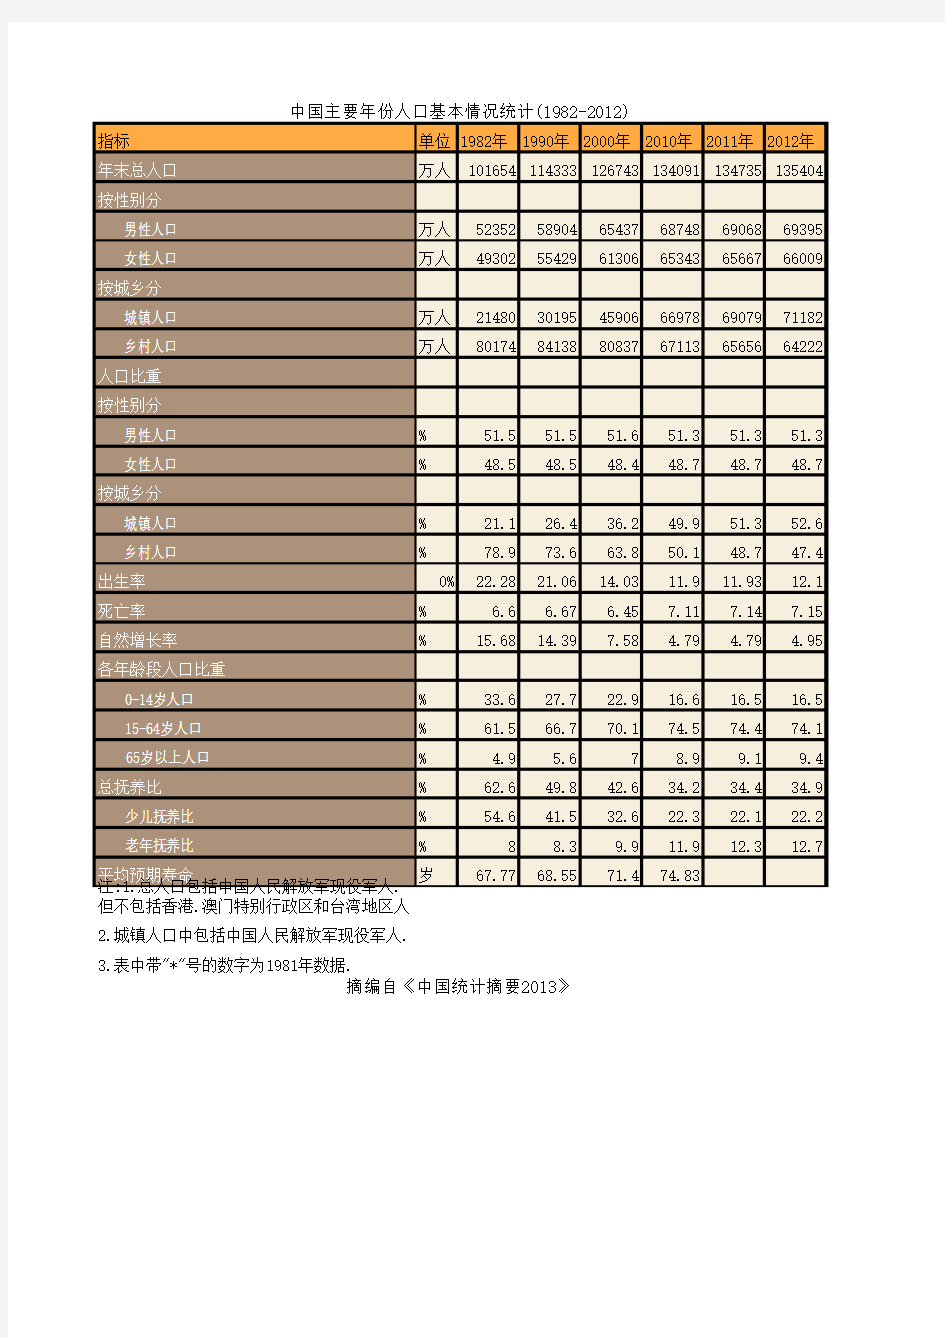 中国主要年份人口基本情况统计(1982-2012)